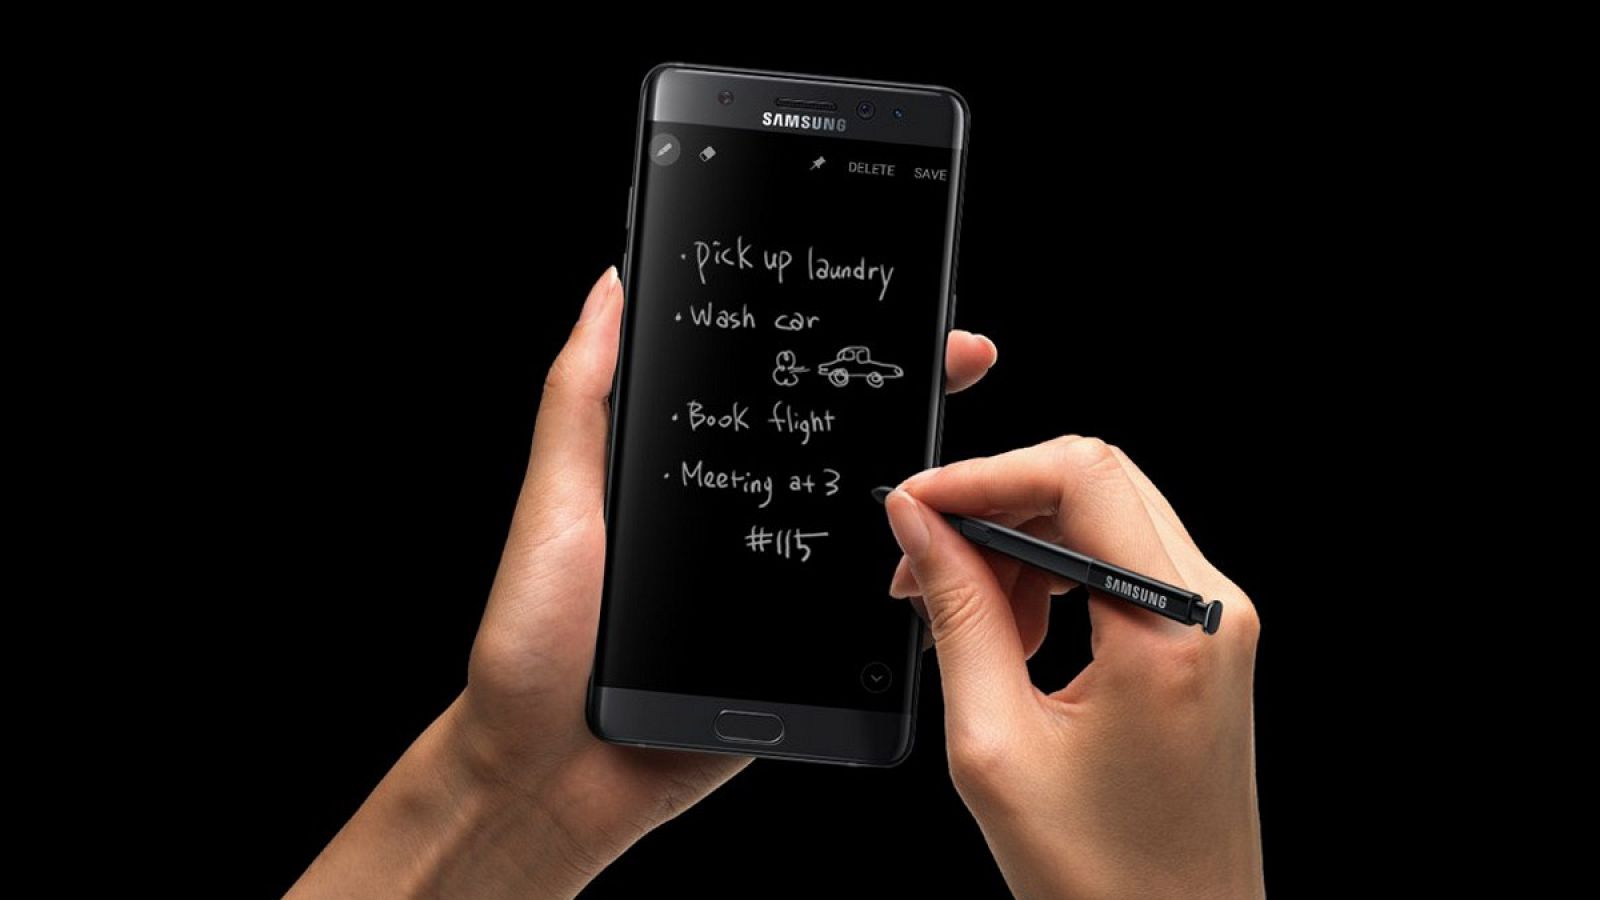 Galaxy Note 7, el nuevo 'phablet' de la firma coreana Samsung.